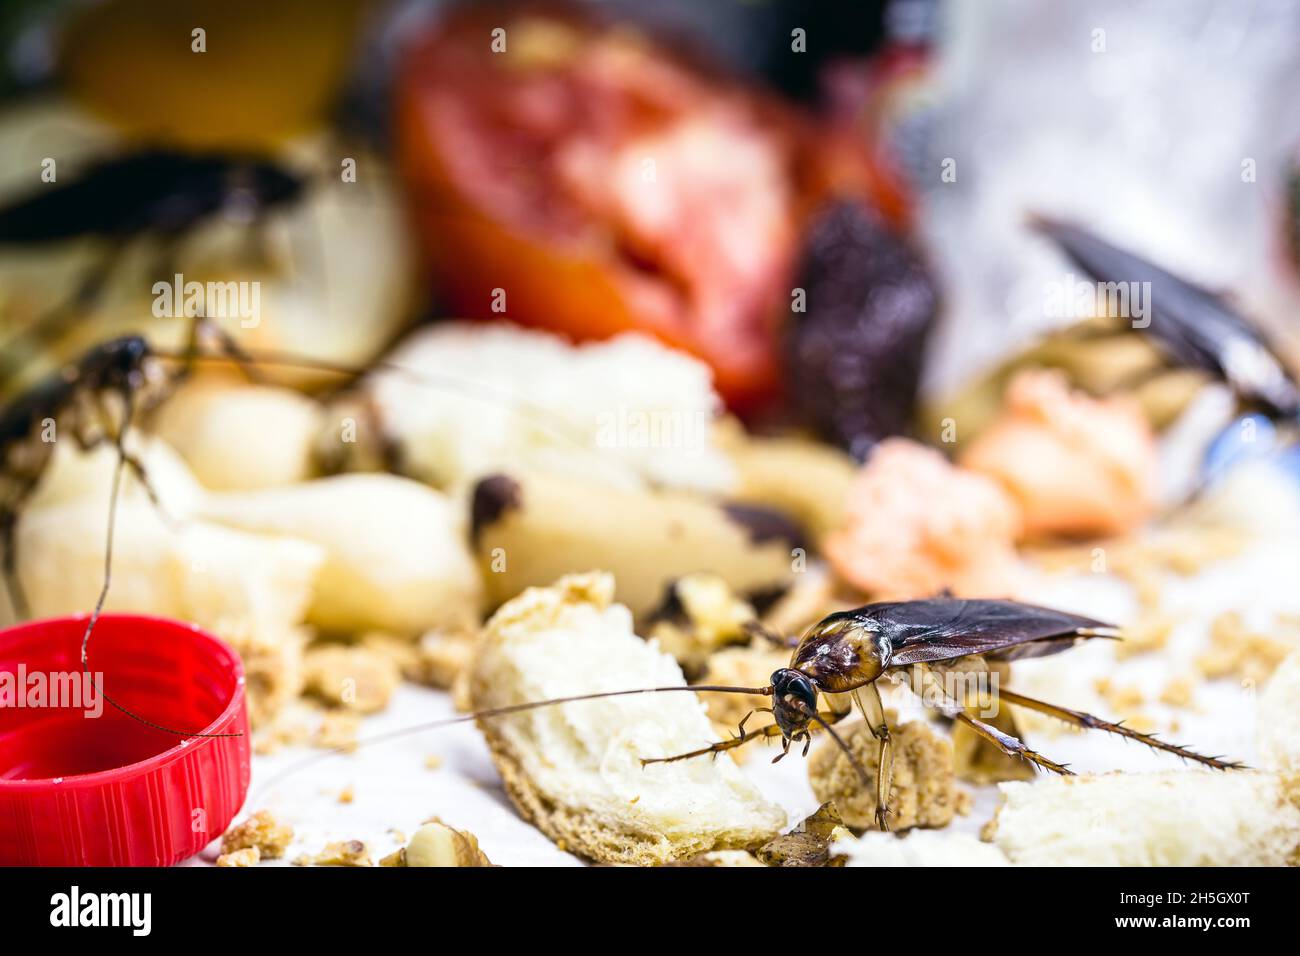 scarafaggi fatti in casa comuni su rifiuti, insetti che mangiano rifiuti, scarsa igiene Foto Stock